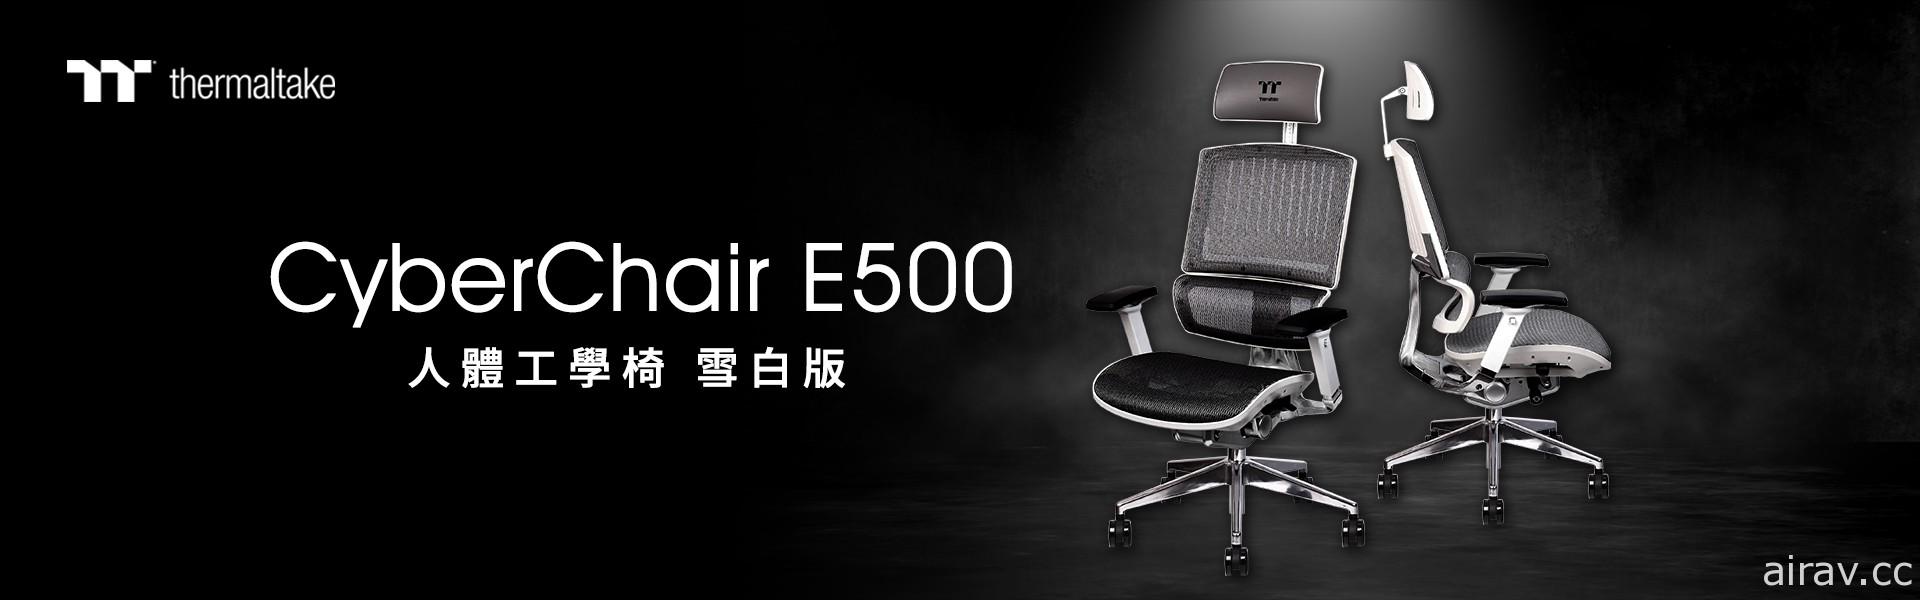 曜越 CyberChair E500 人體工學椅推出雪白版